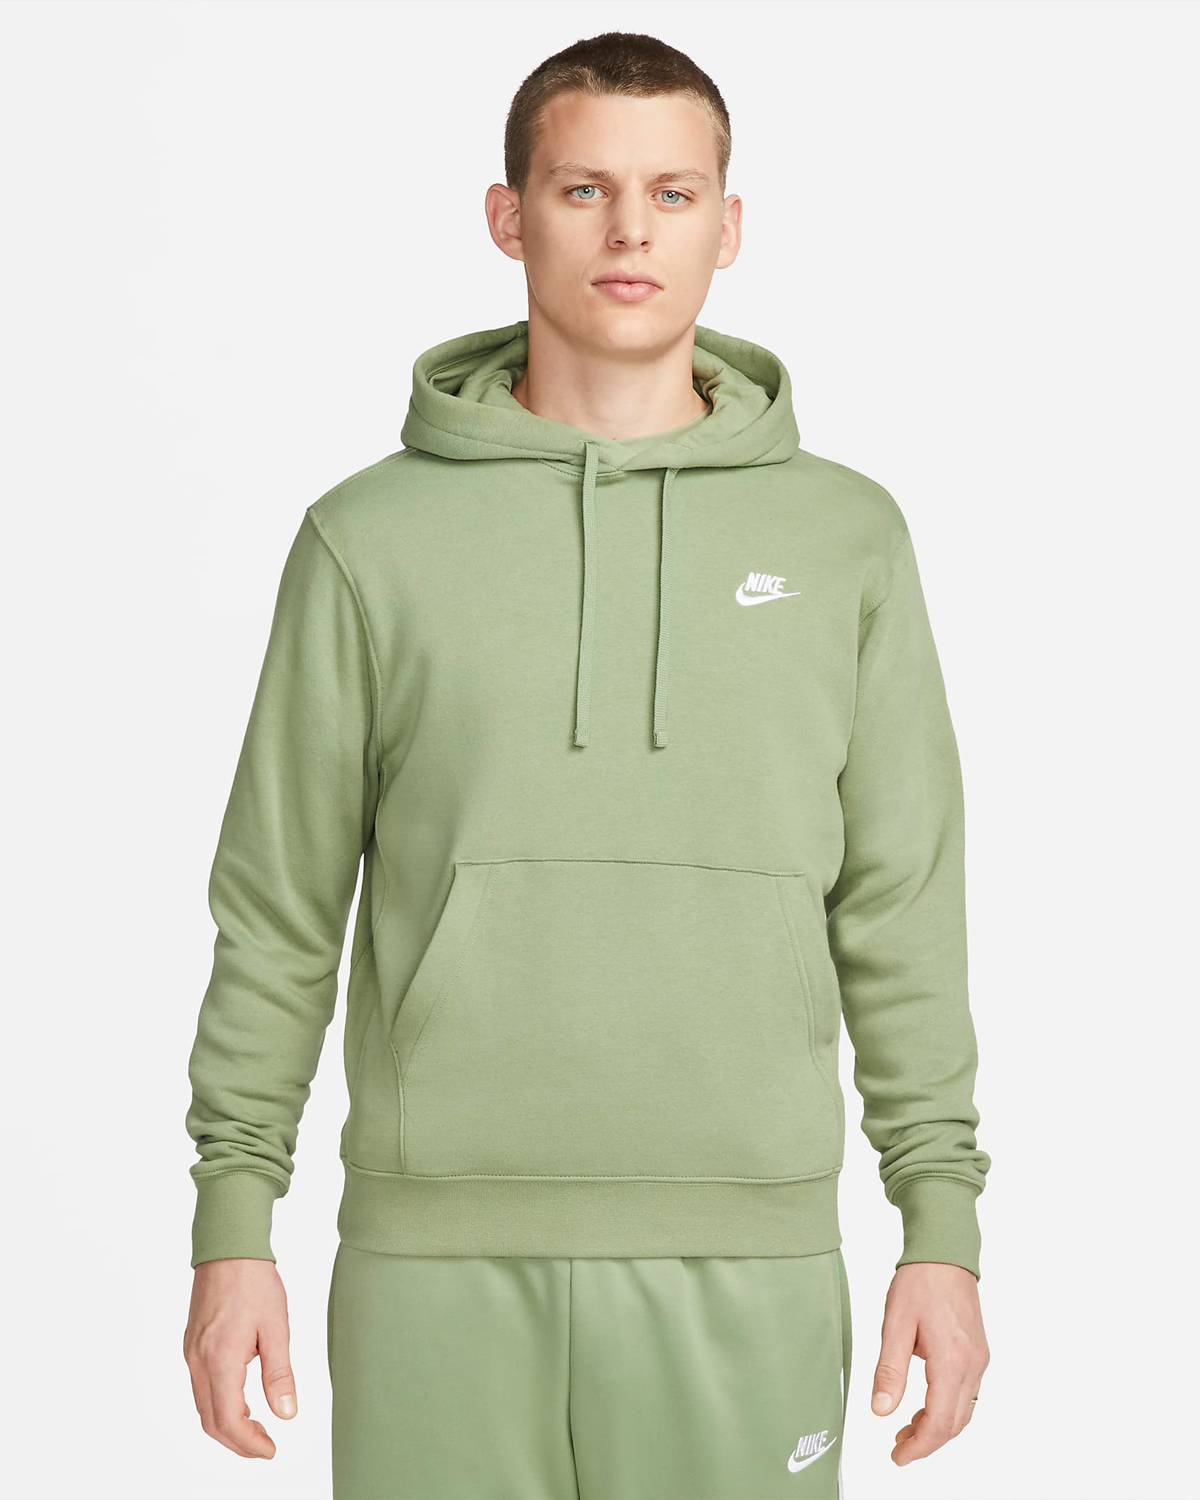 Nike-Oil-Green-Club-Fleece-Pullover-Hoodie